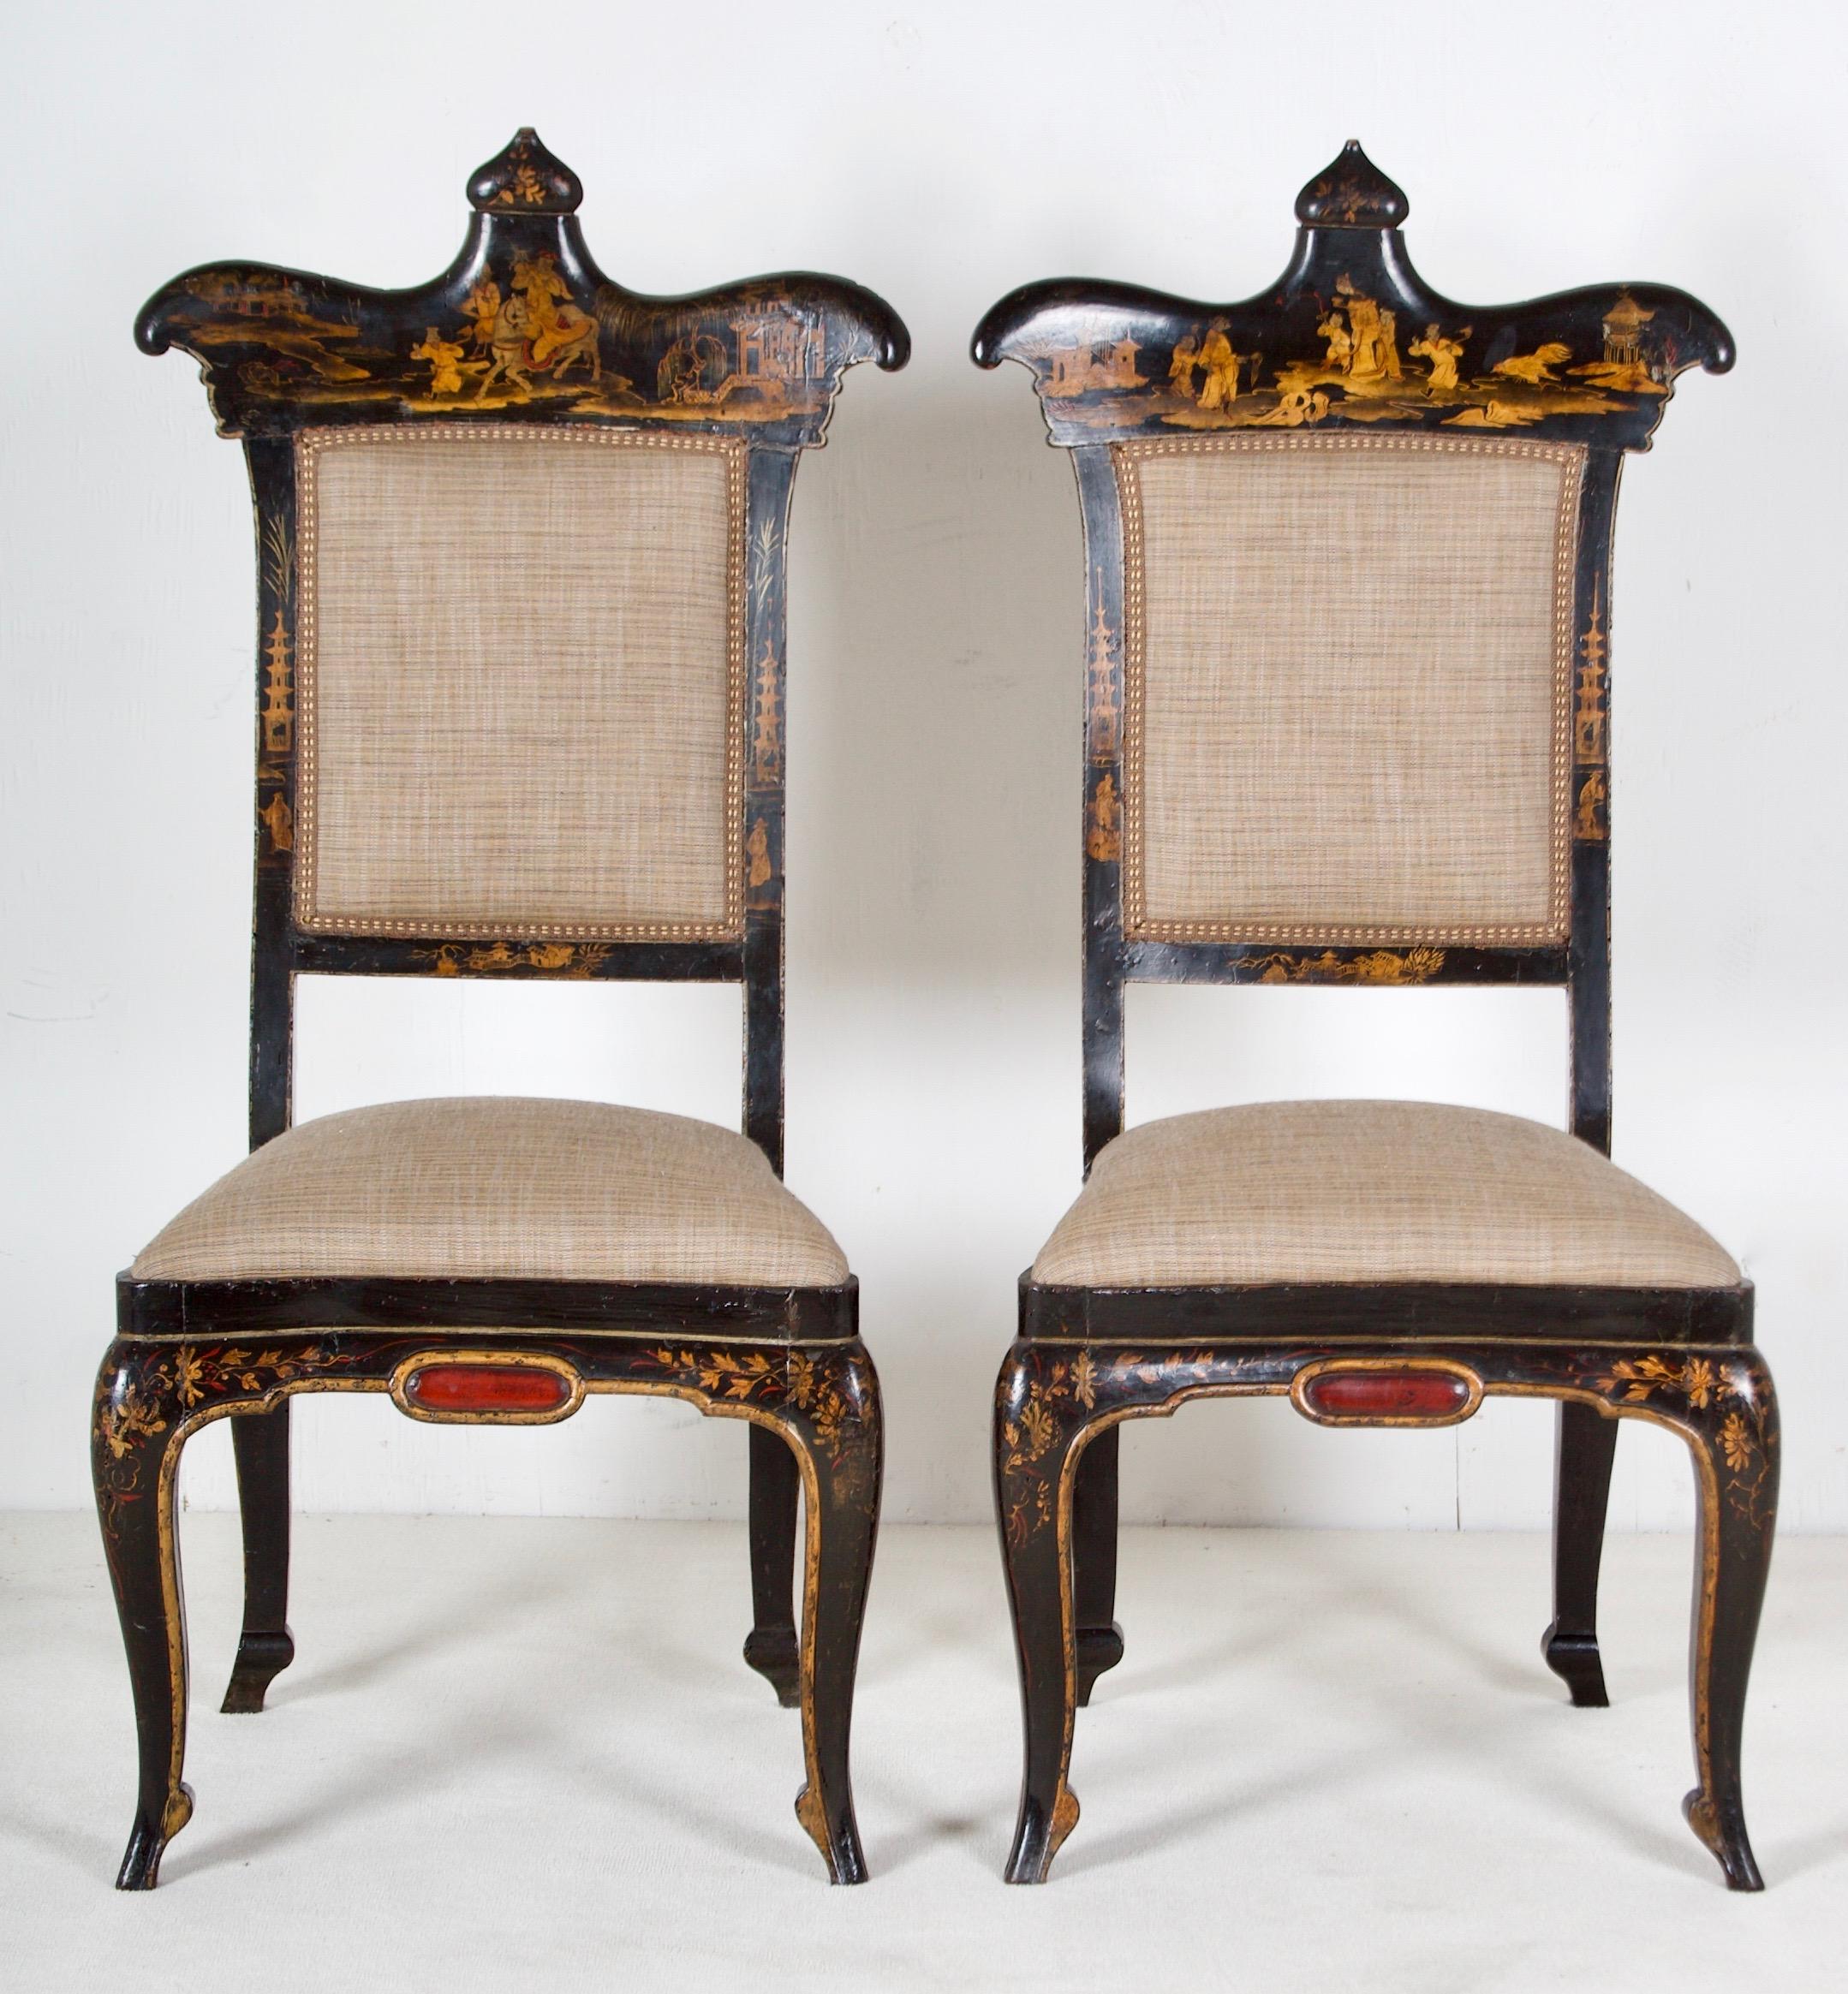 Dieses Paar Stühle ist exquisit gestylt, das Chinoiserie ist fein und europäisch im Stil.
Die Stühle stehen auf 